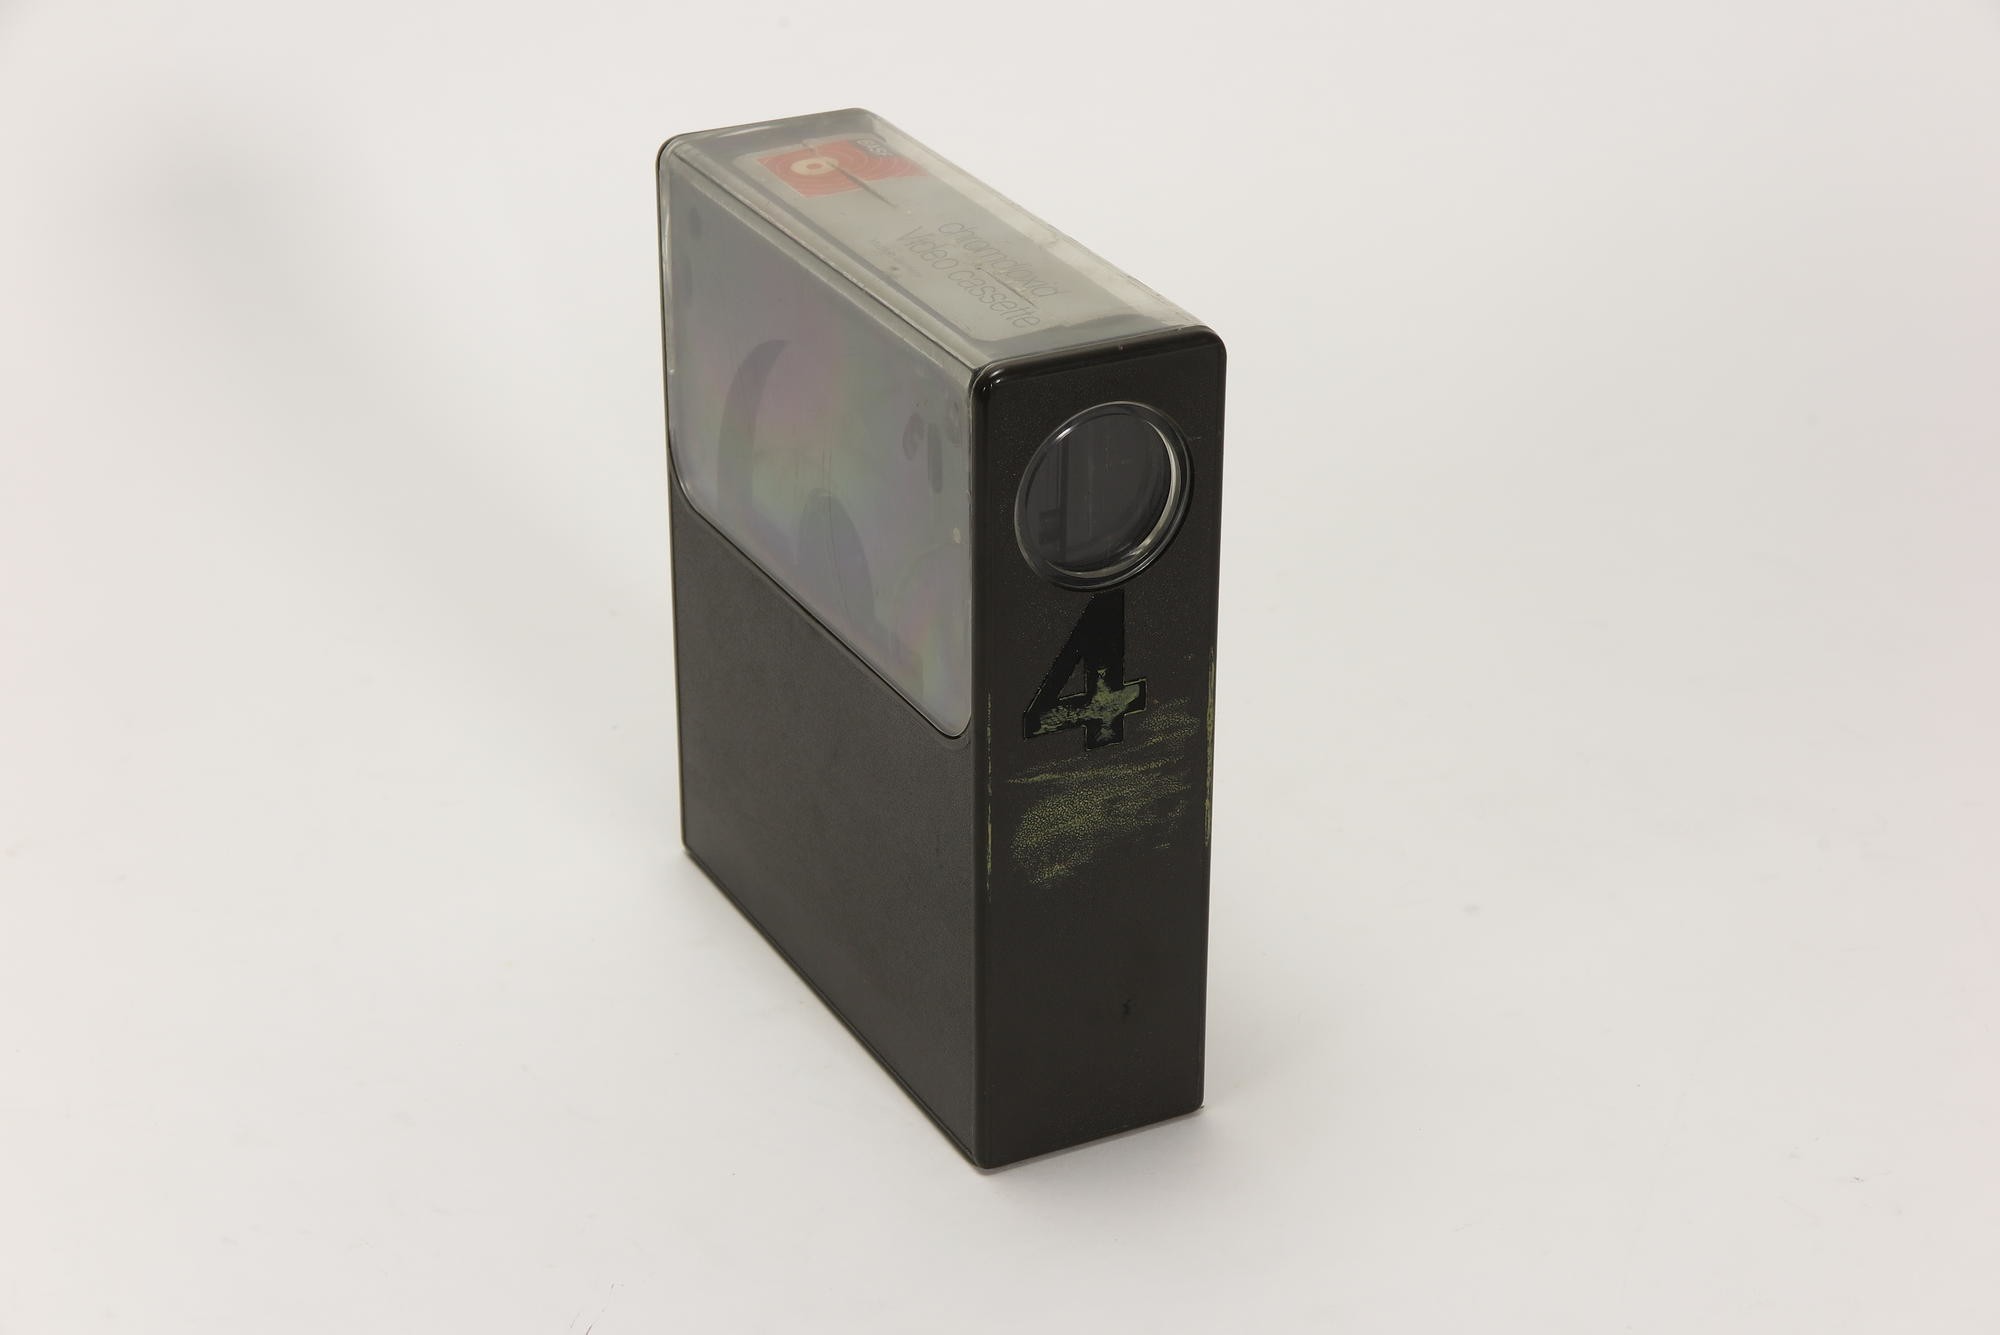 1 x BASF VC 30 Videokassette, Zubehör für Videorecorder Telefunken VR 40 (Stiftung Deutsches Technikmuseum Berlin CC0)